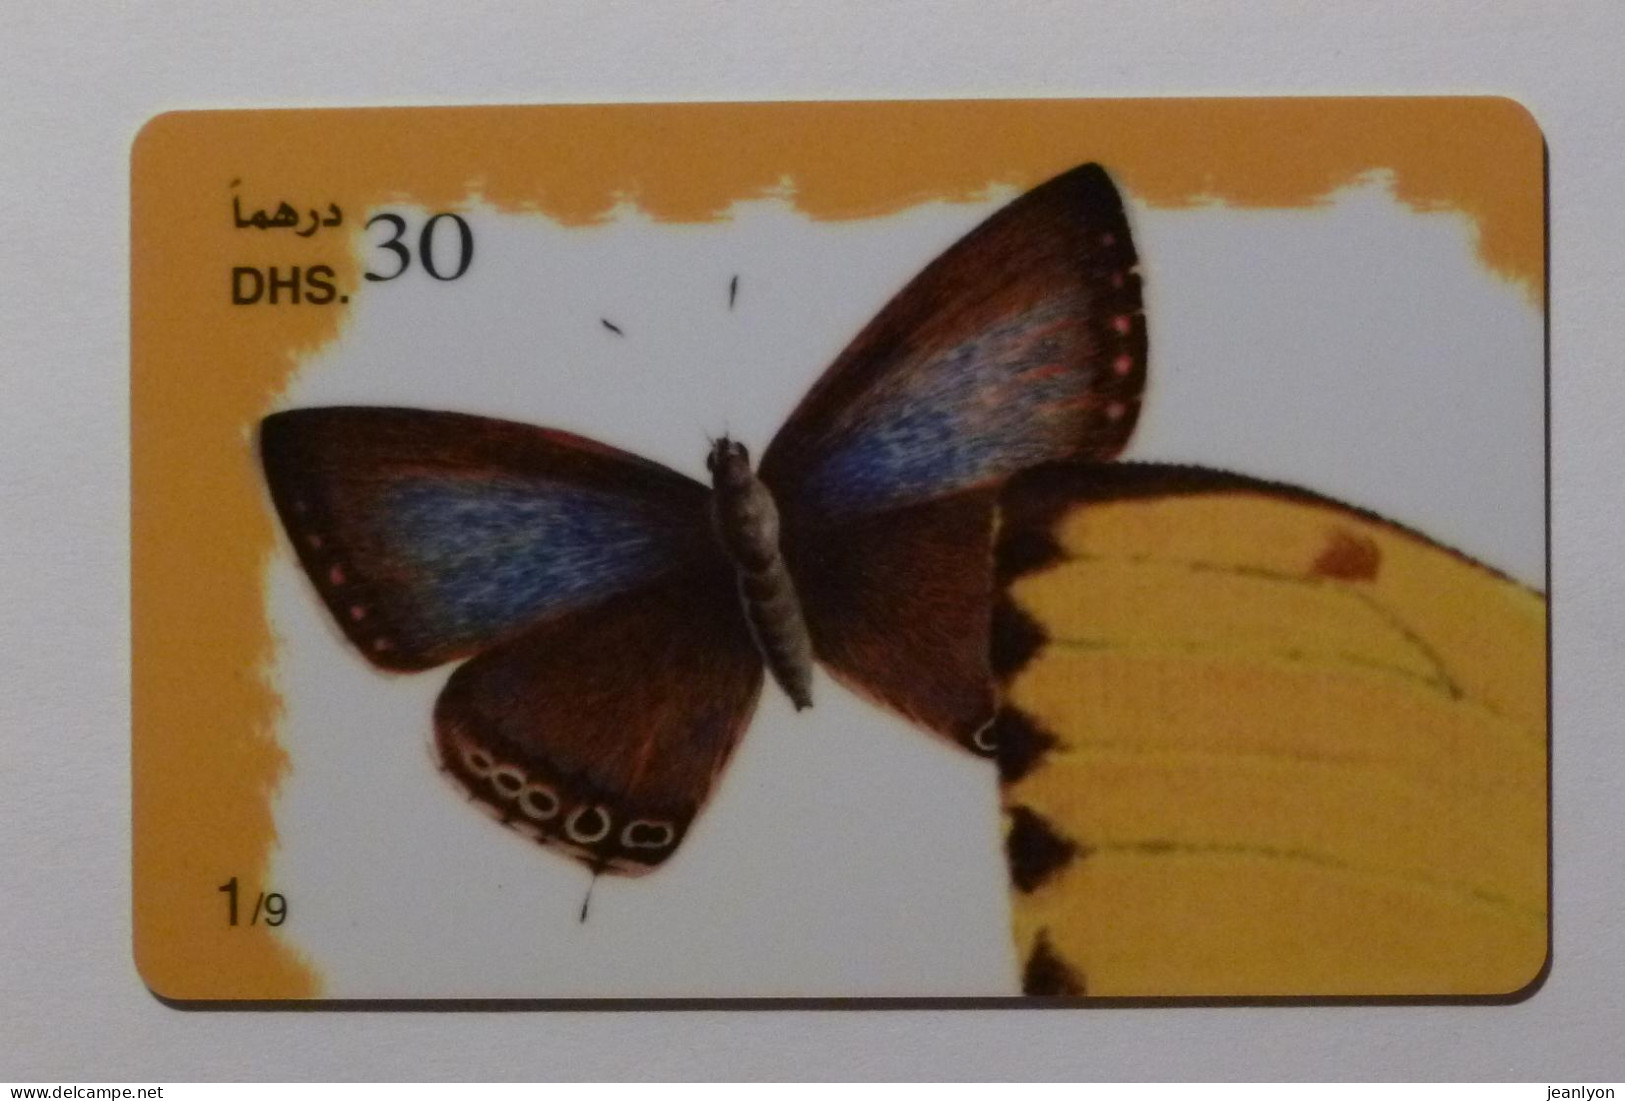 PAPILLON Avec Ailes Déployées - Butterfly - Carte Téléphone Prépayée EMIRATS ARABES UNIS / Prepaid Card ETISALAT - Schmetterlinge